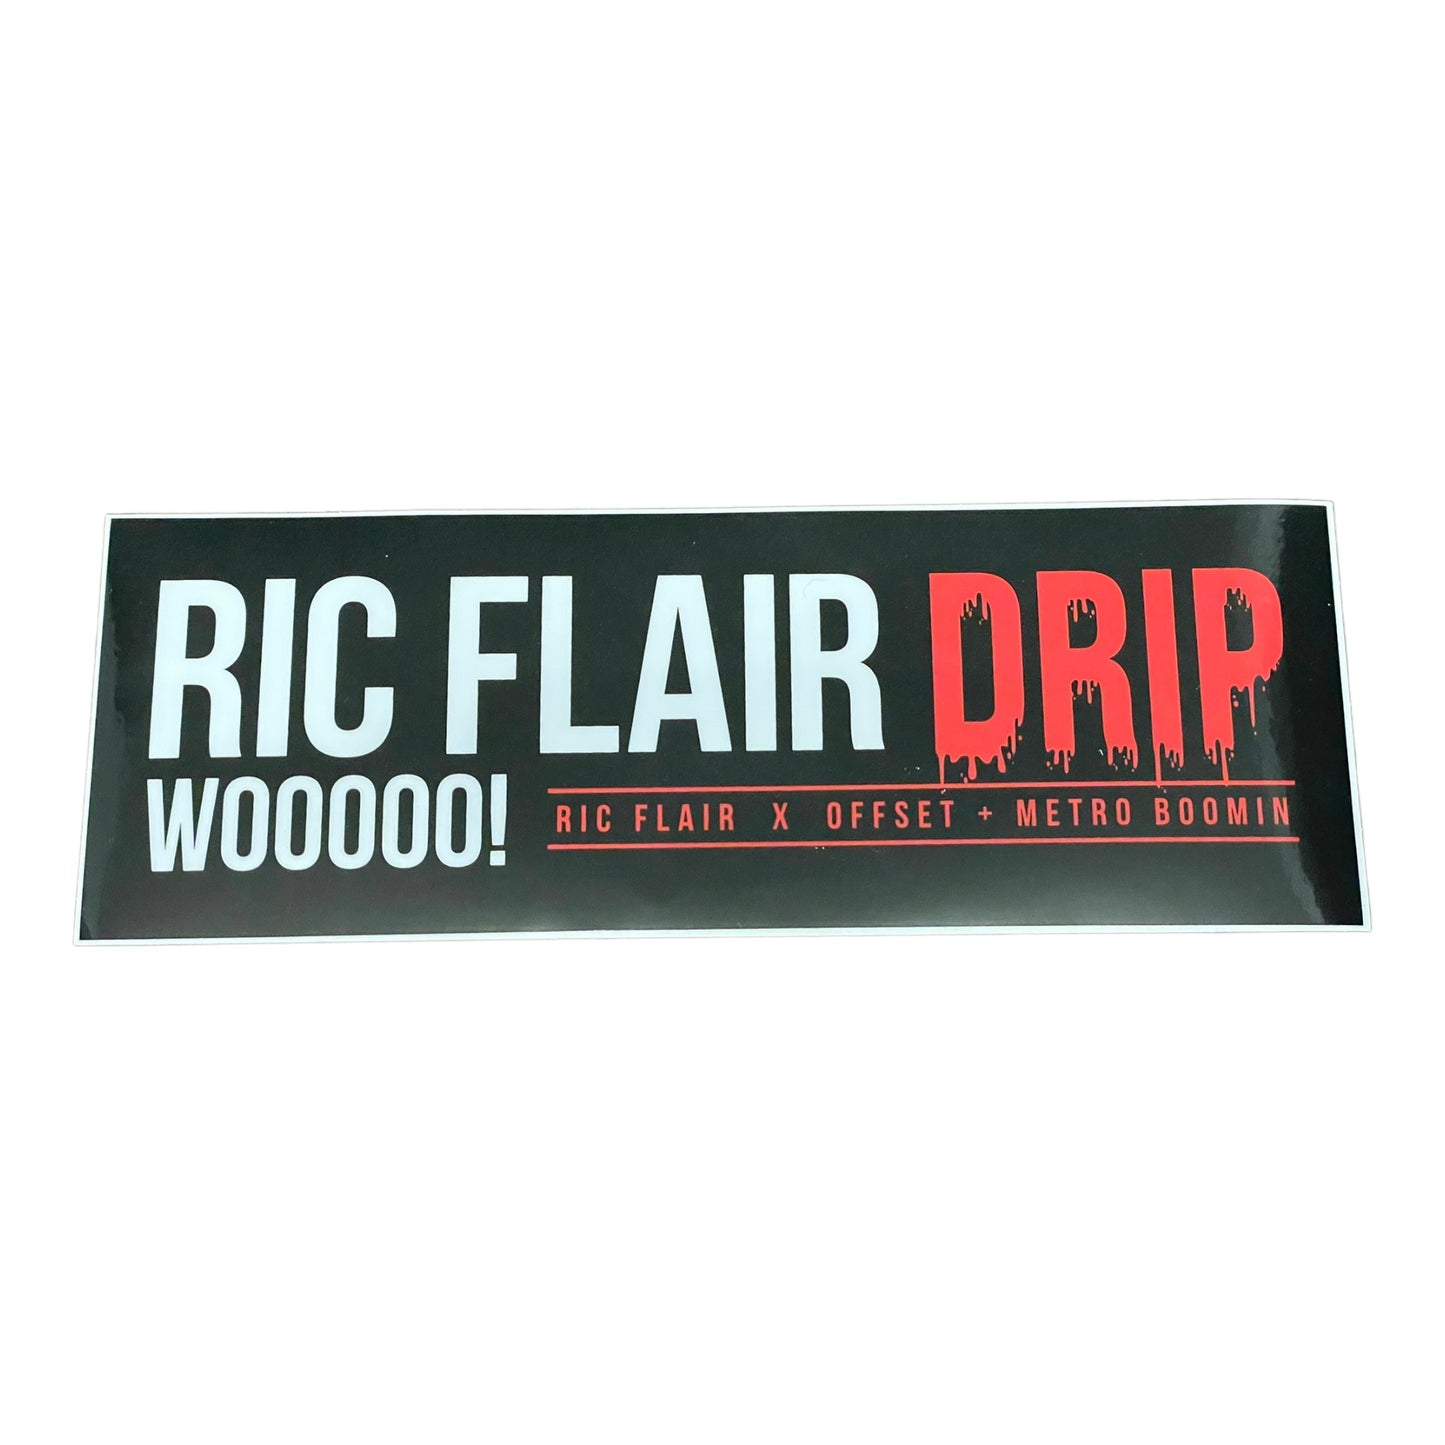 The Ric Flair Drip™ brand Bumper Sticker